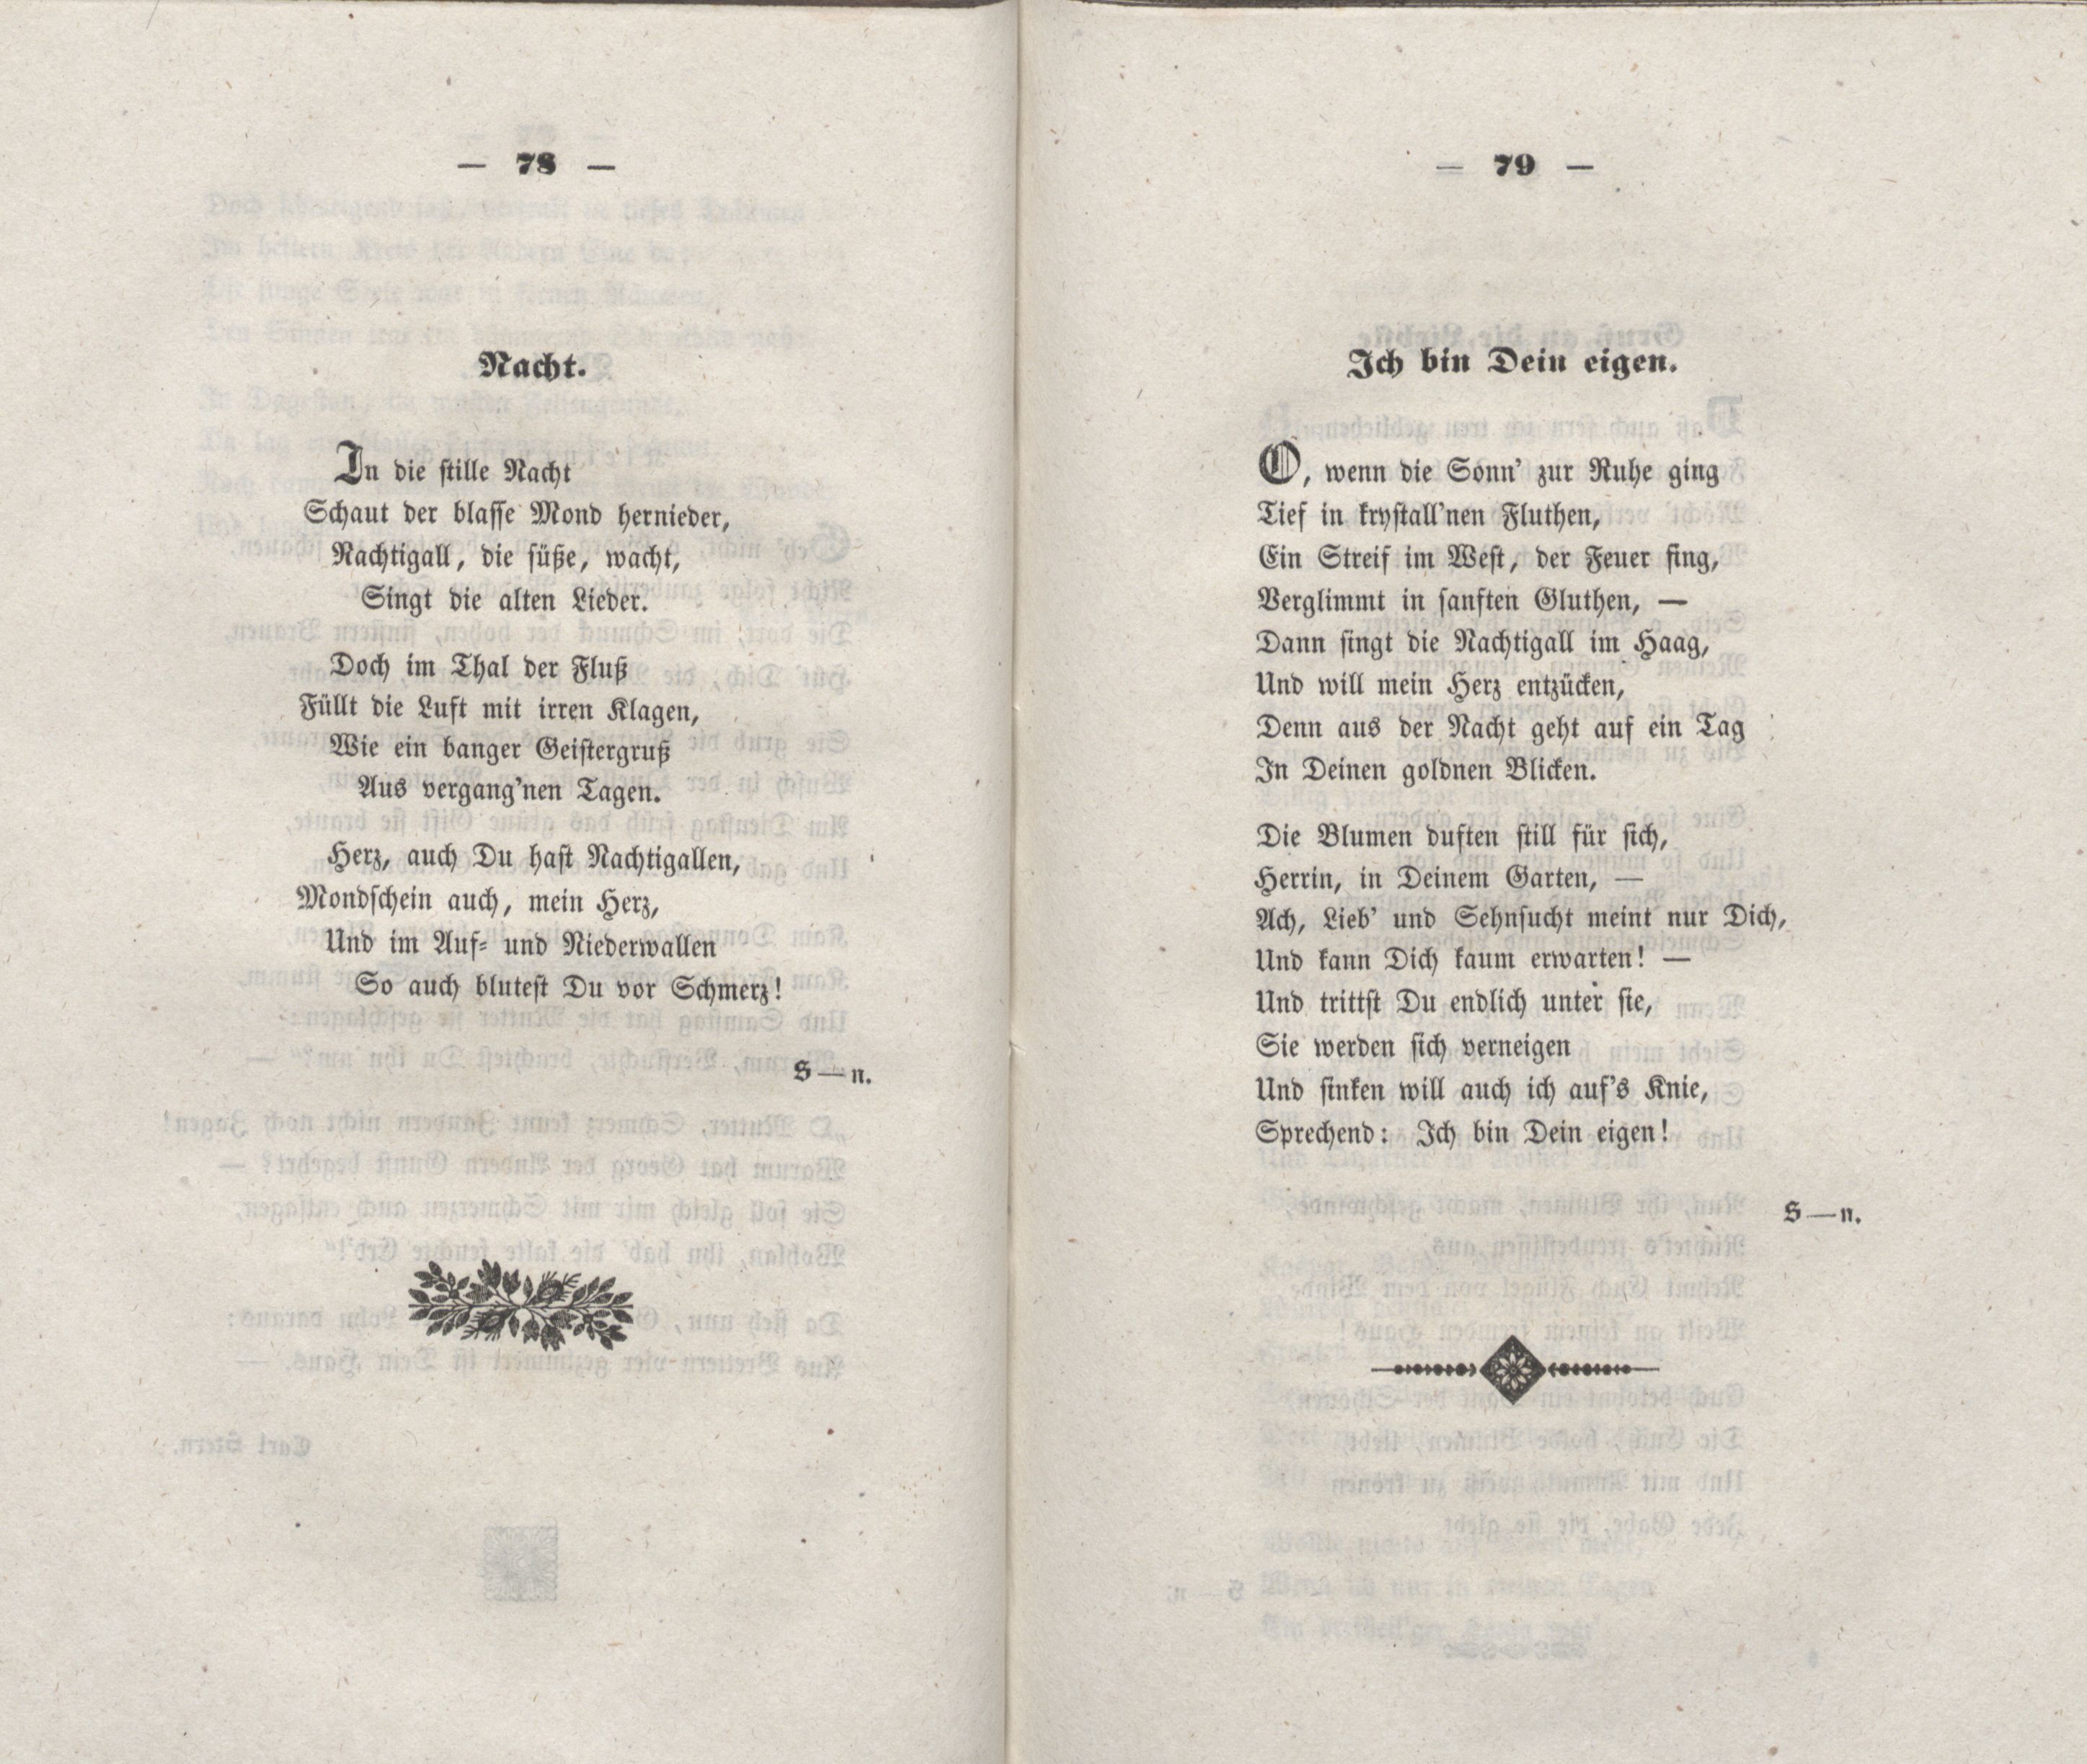 Nacht (1848) | 1. (78-79) Main body of text